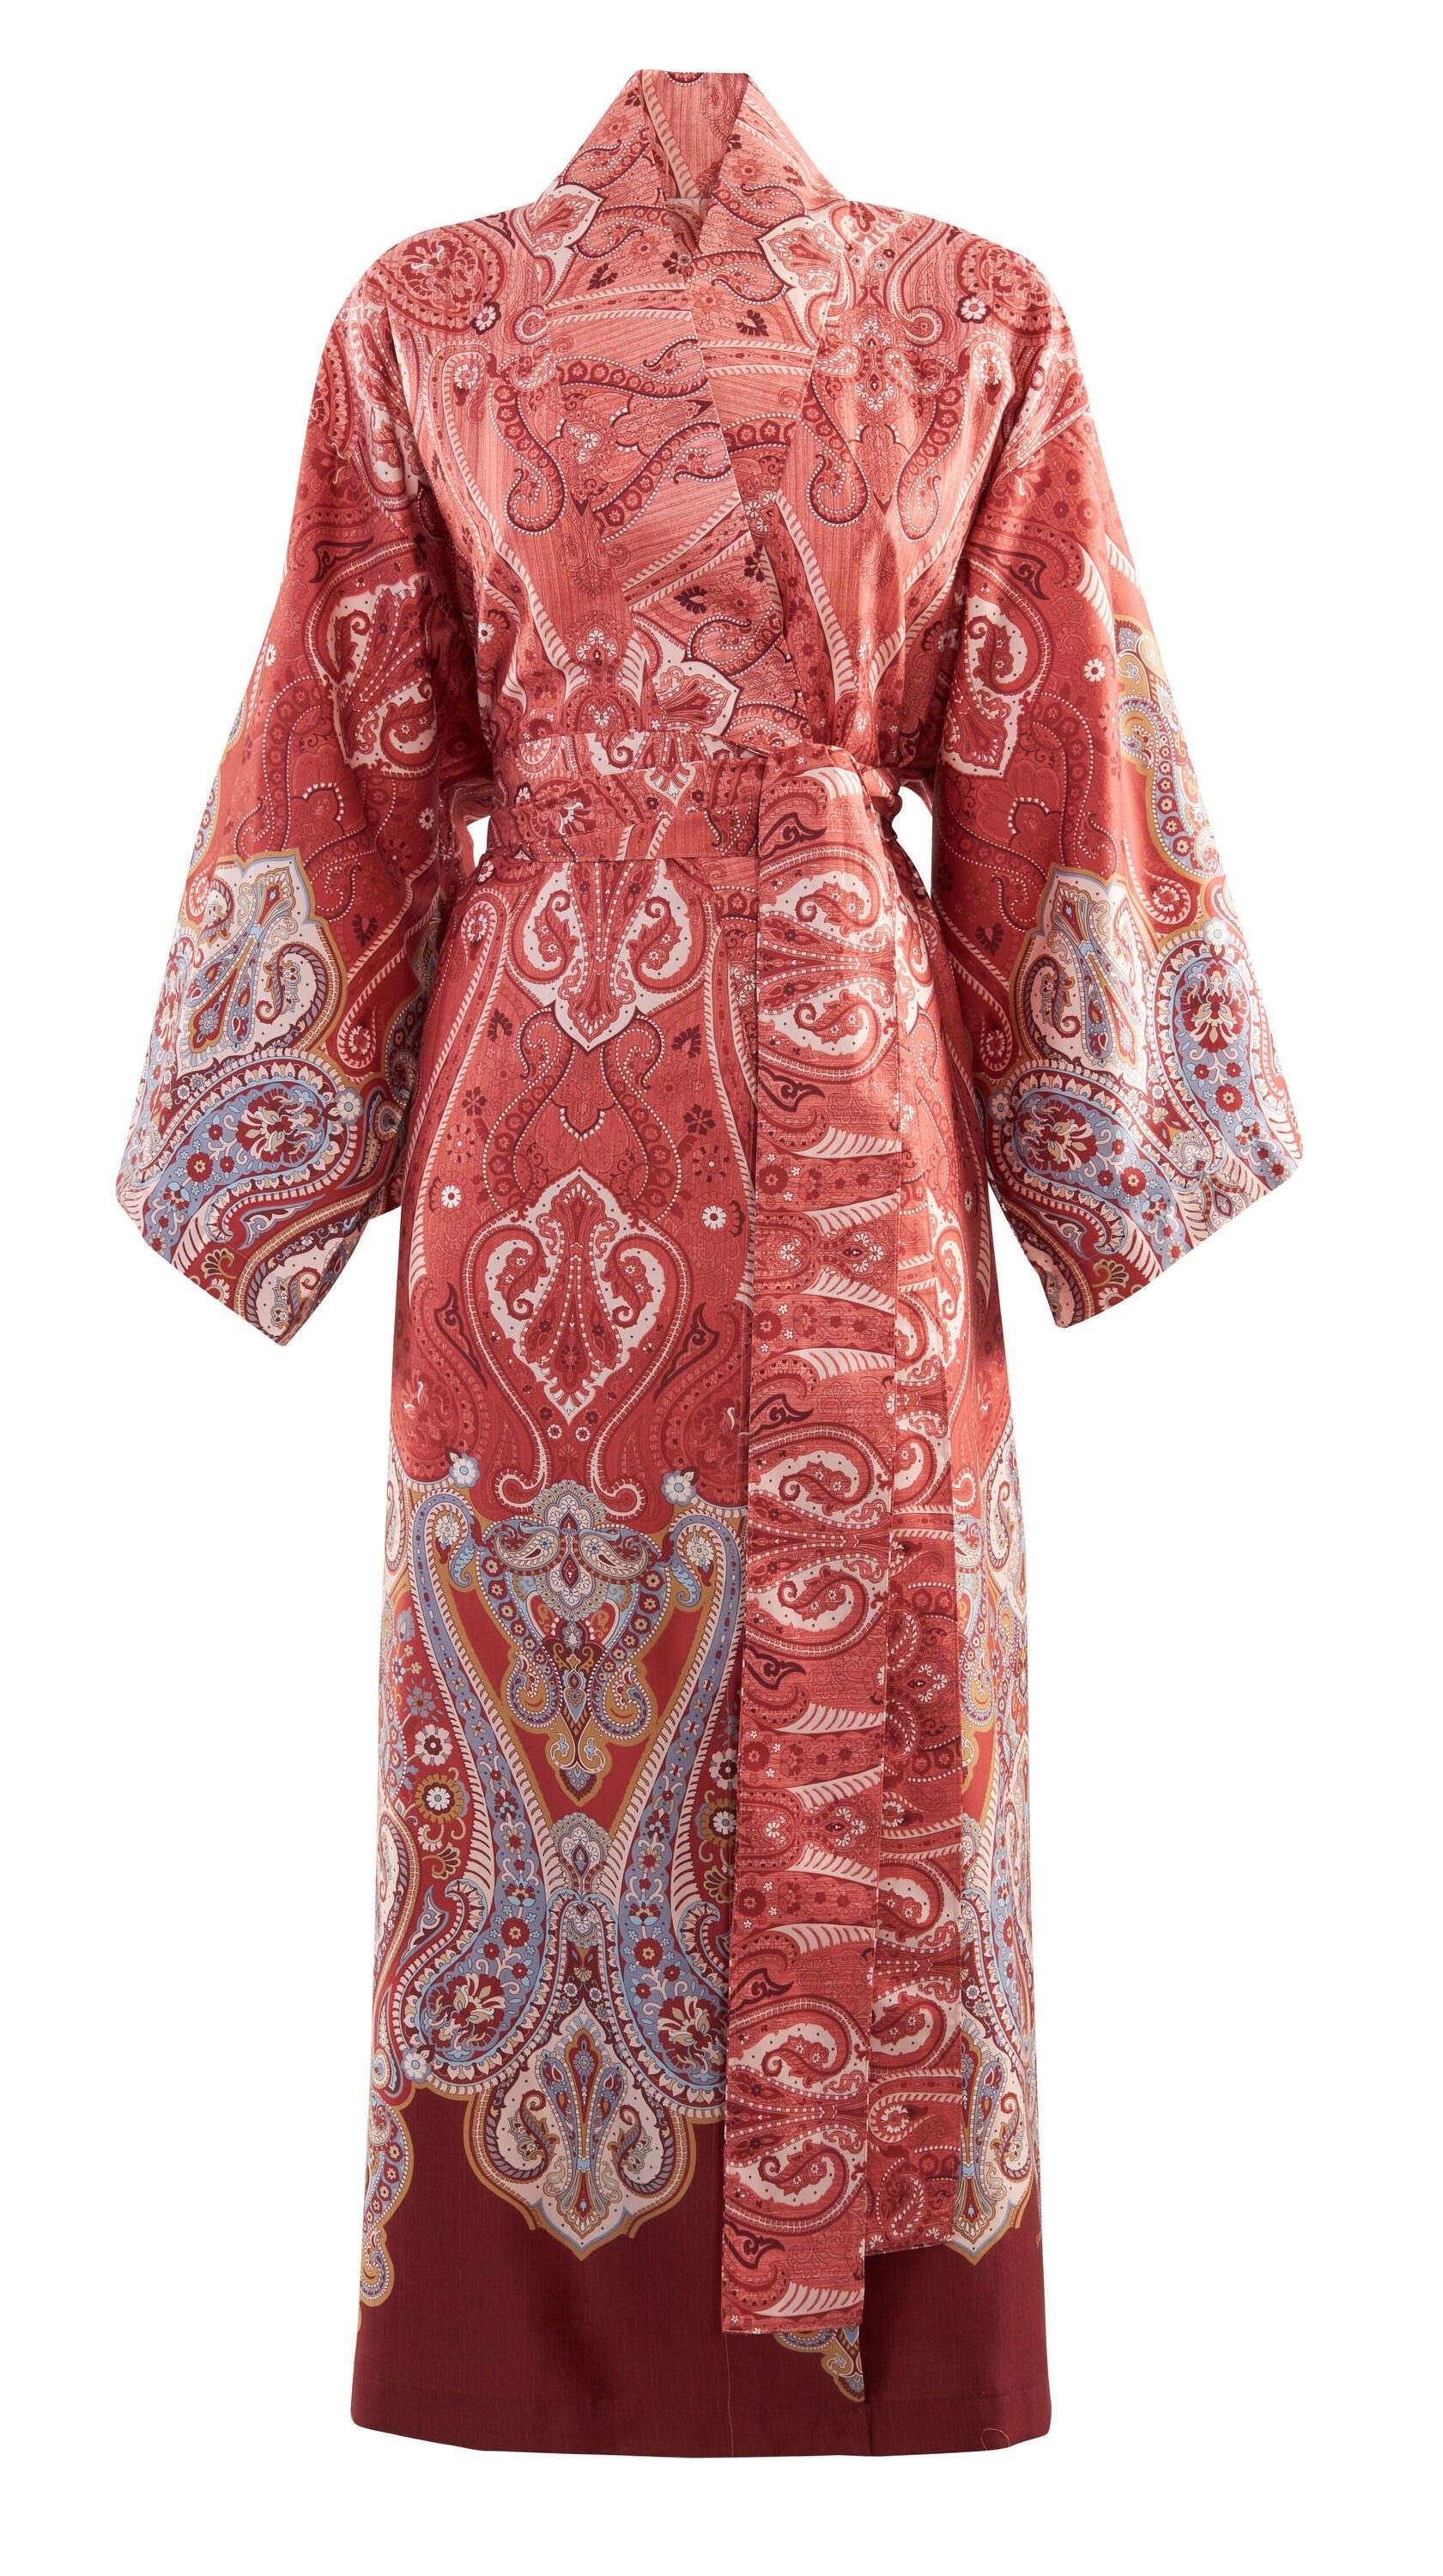 Bassetti Kimono RAGUSA, knieumspielend, Baumwolle, ohne Verschluss, mit Schalkragen, aus weicher satinierter Baumwolle